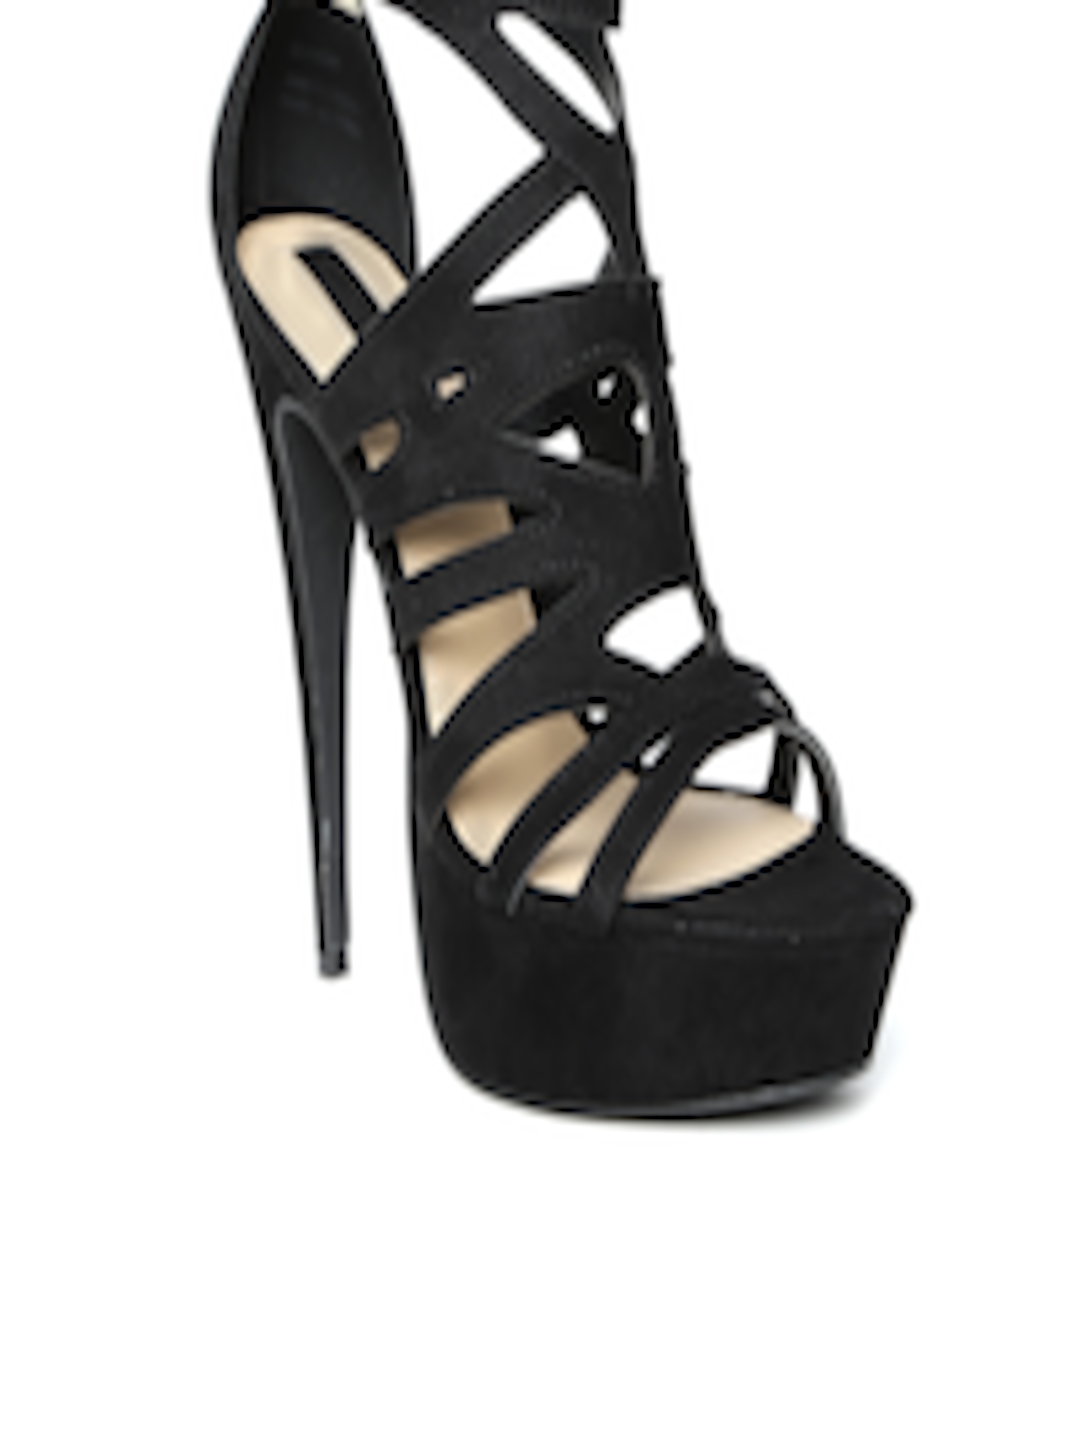 Buy FOREVER 21 Women Black Stilettos - Heels for Women 1149611 | Myntra